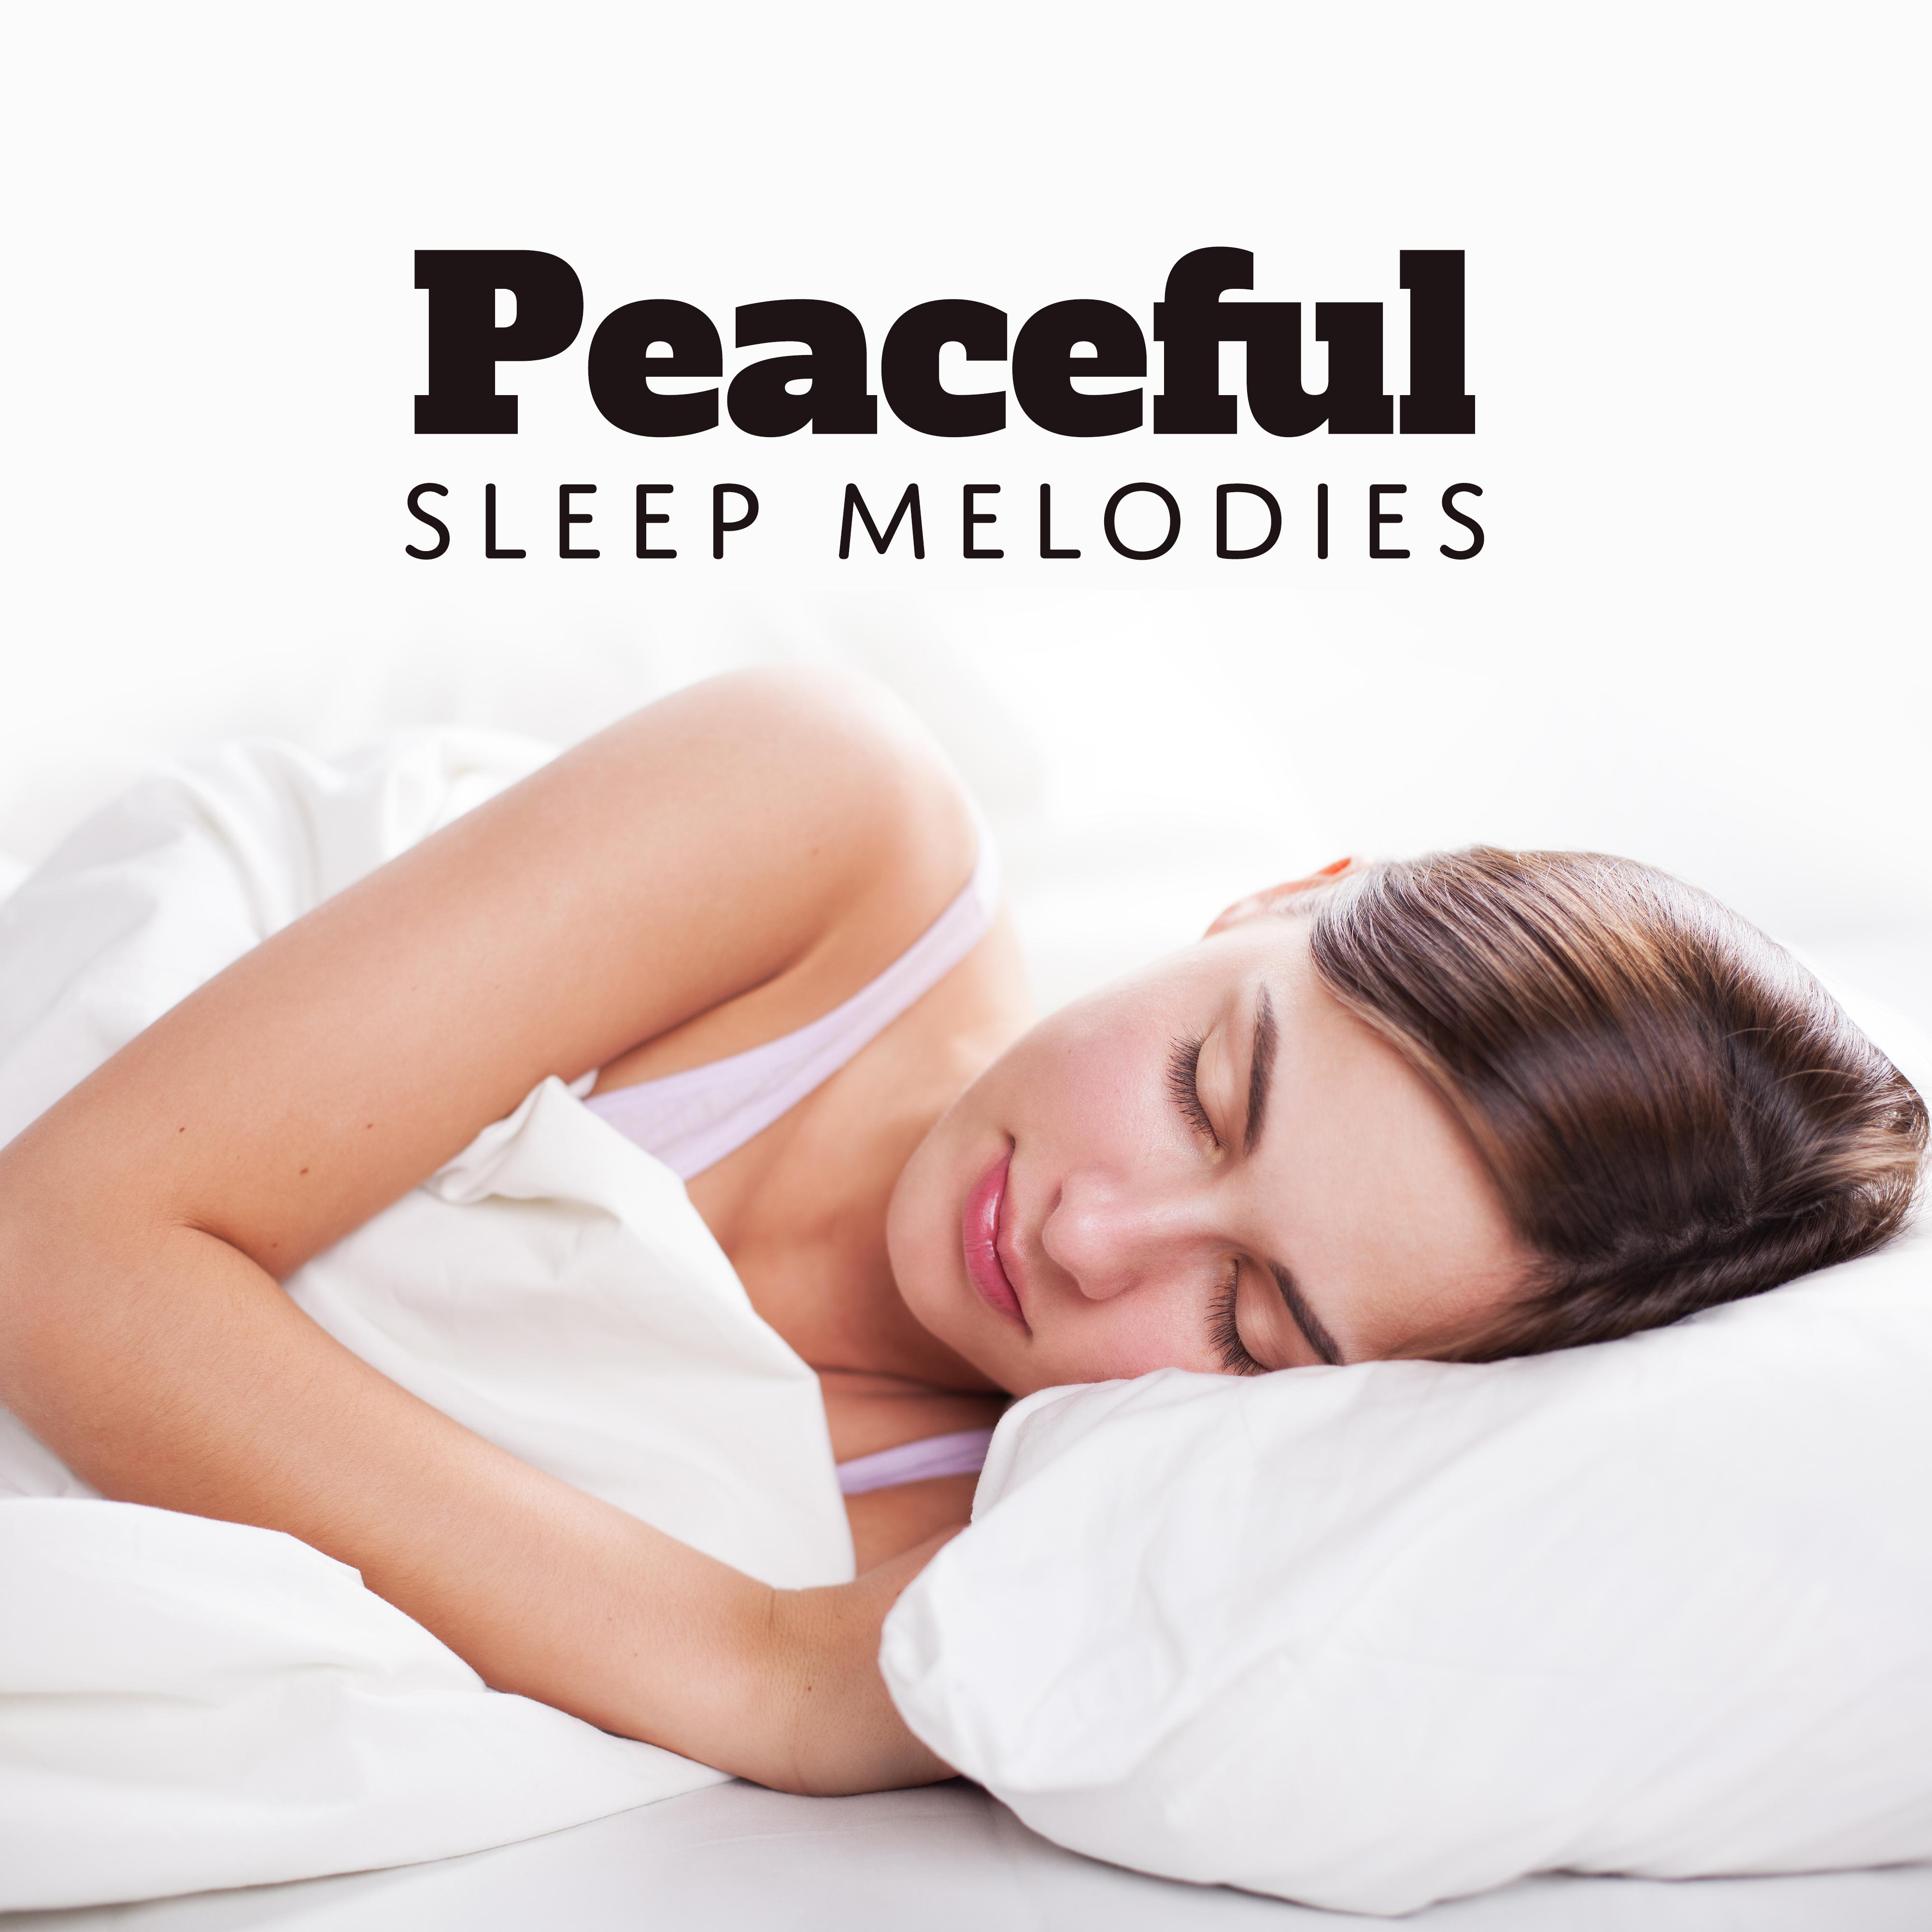 Peaceful Sleep Melodies